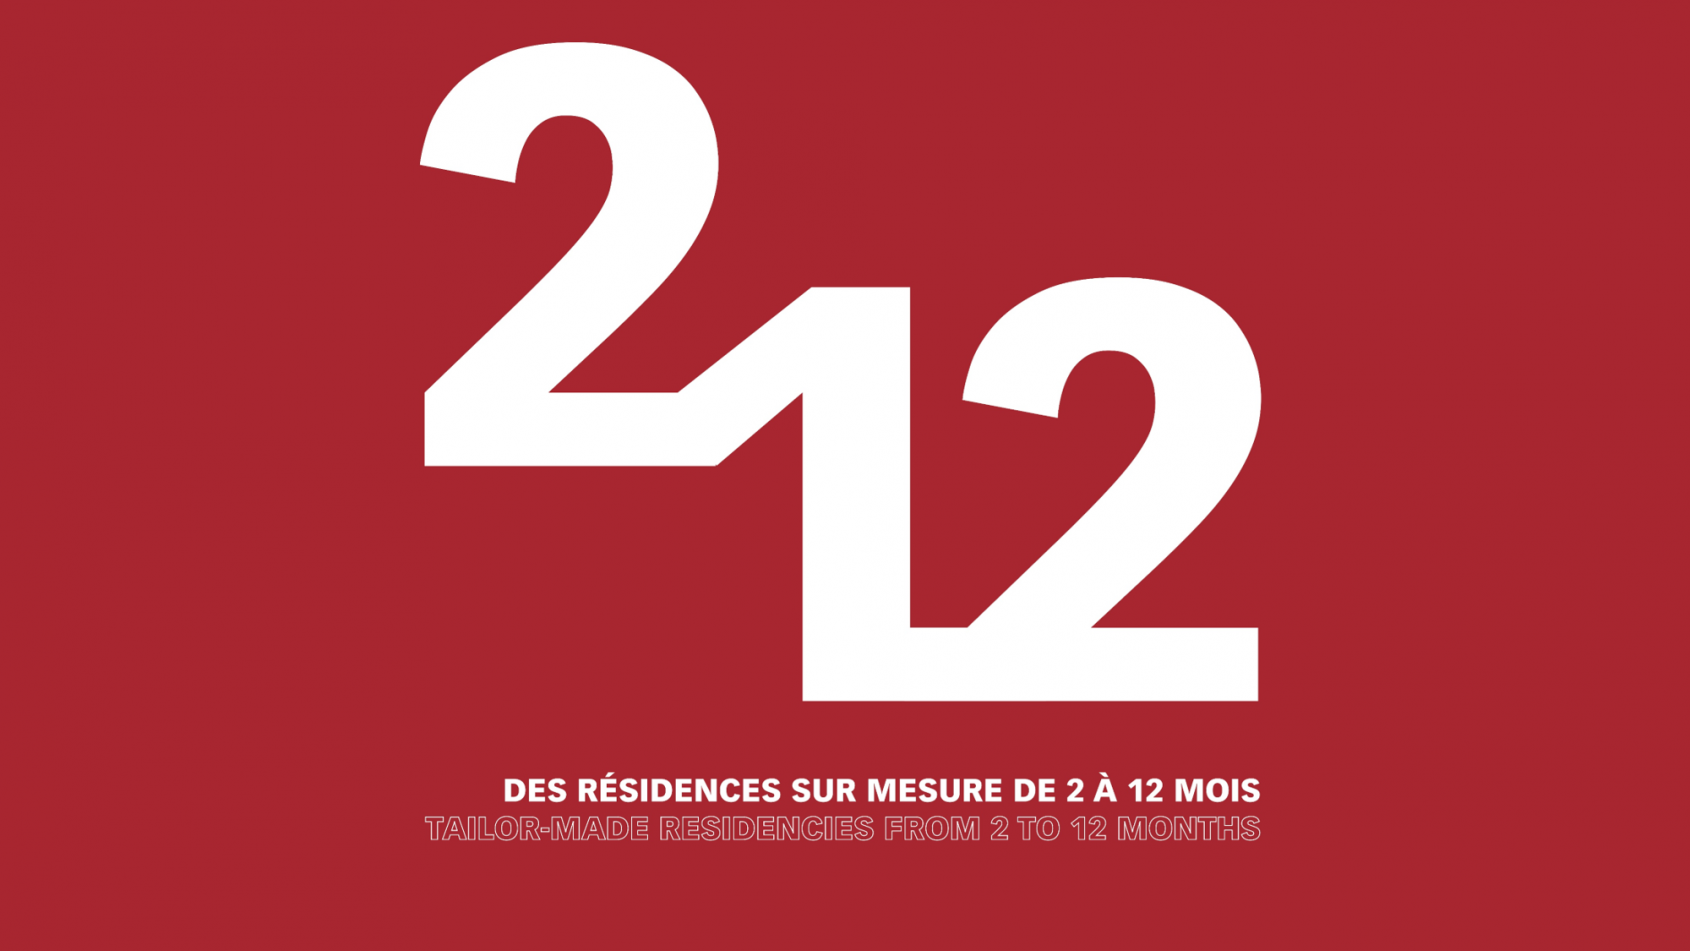 Cité internationale des arts : Des résidences sur mesure de 2 à 12 mois